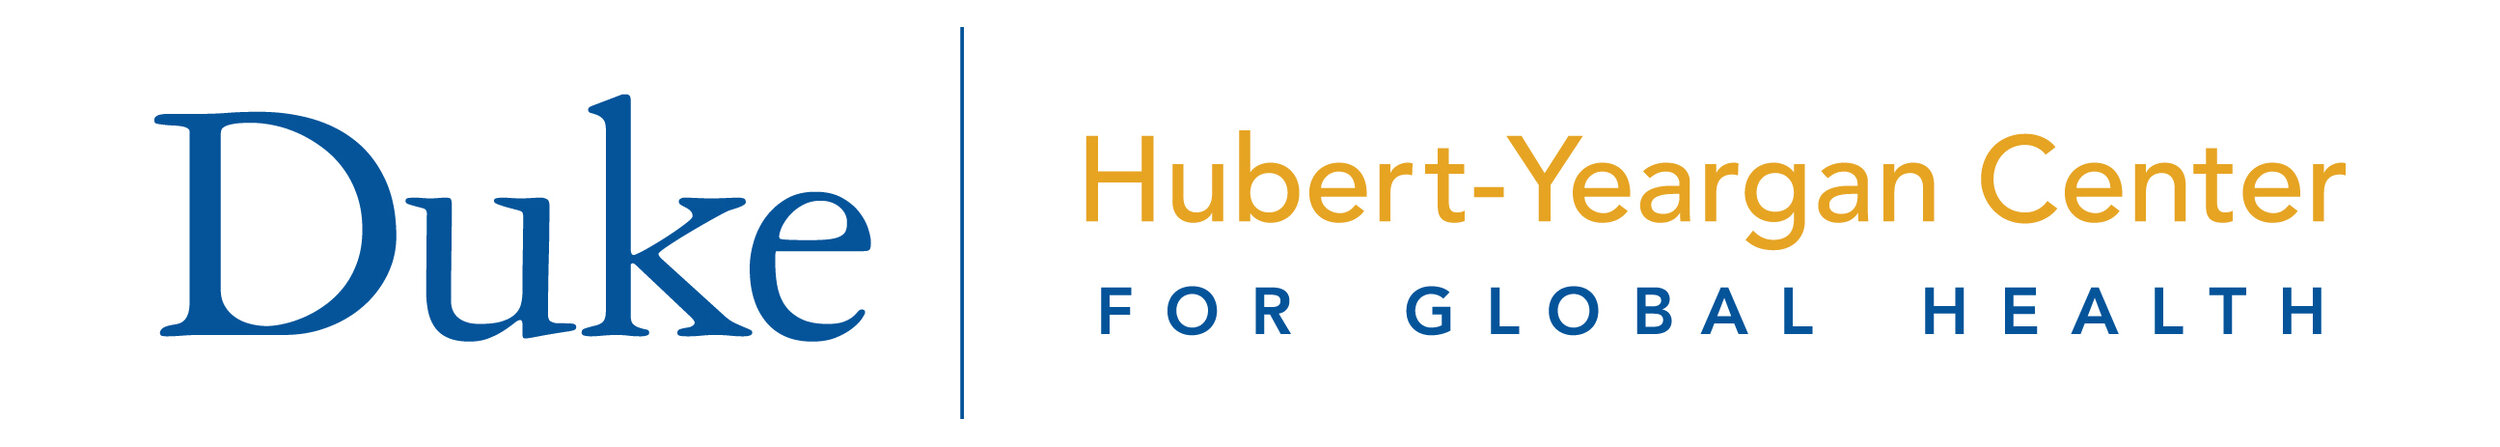 Duke Hubert-Yeargan Center for Global Health